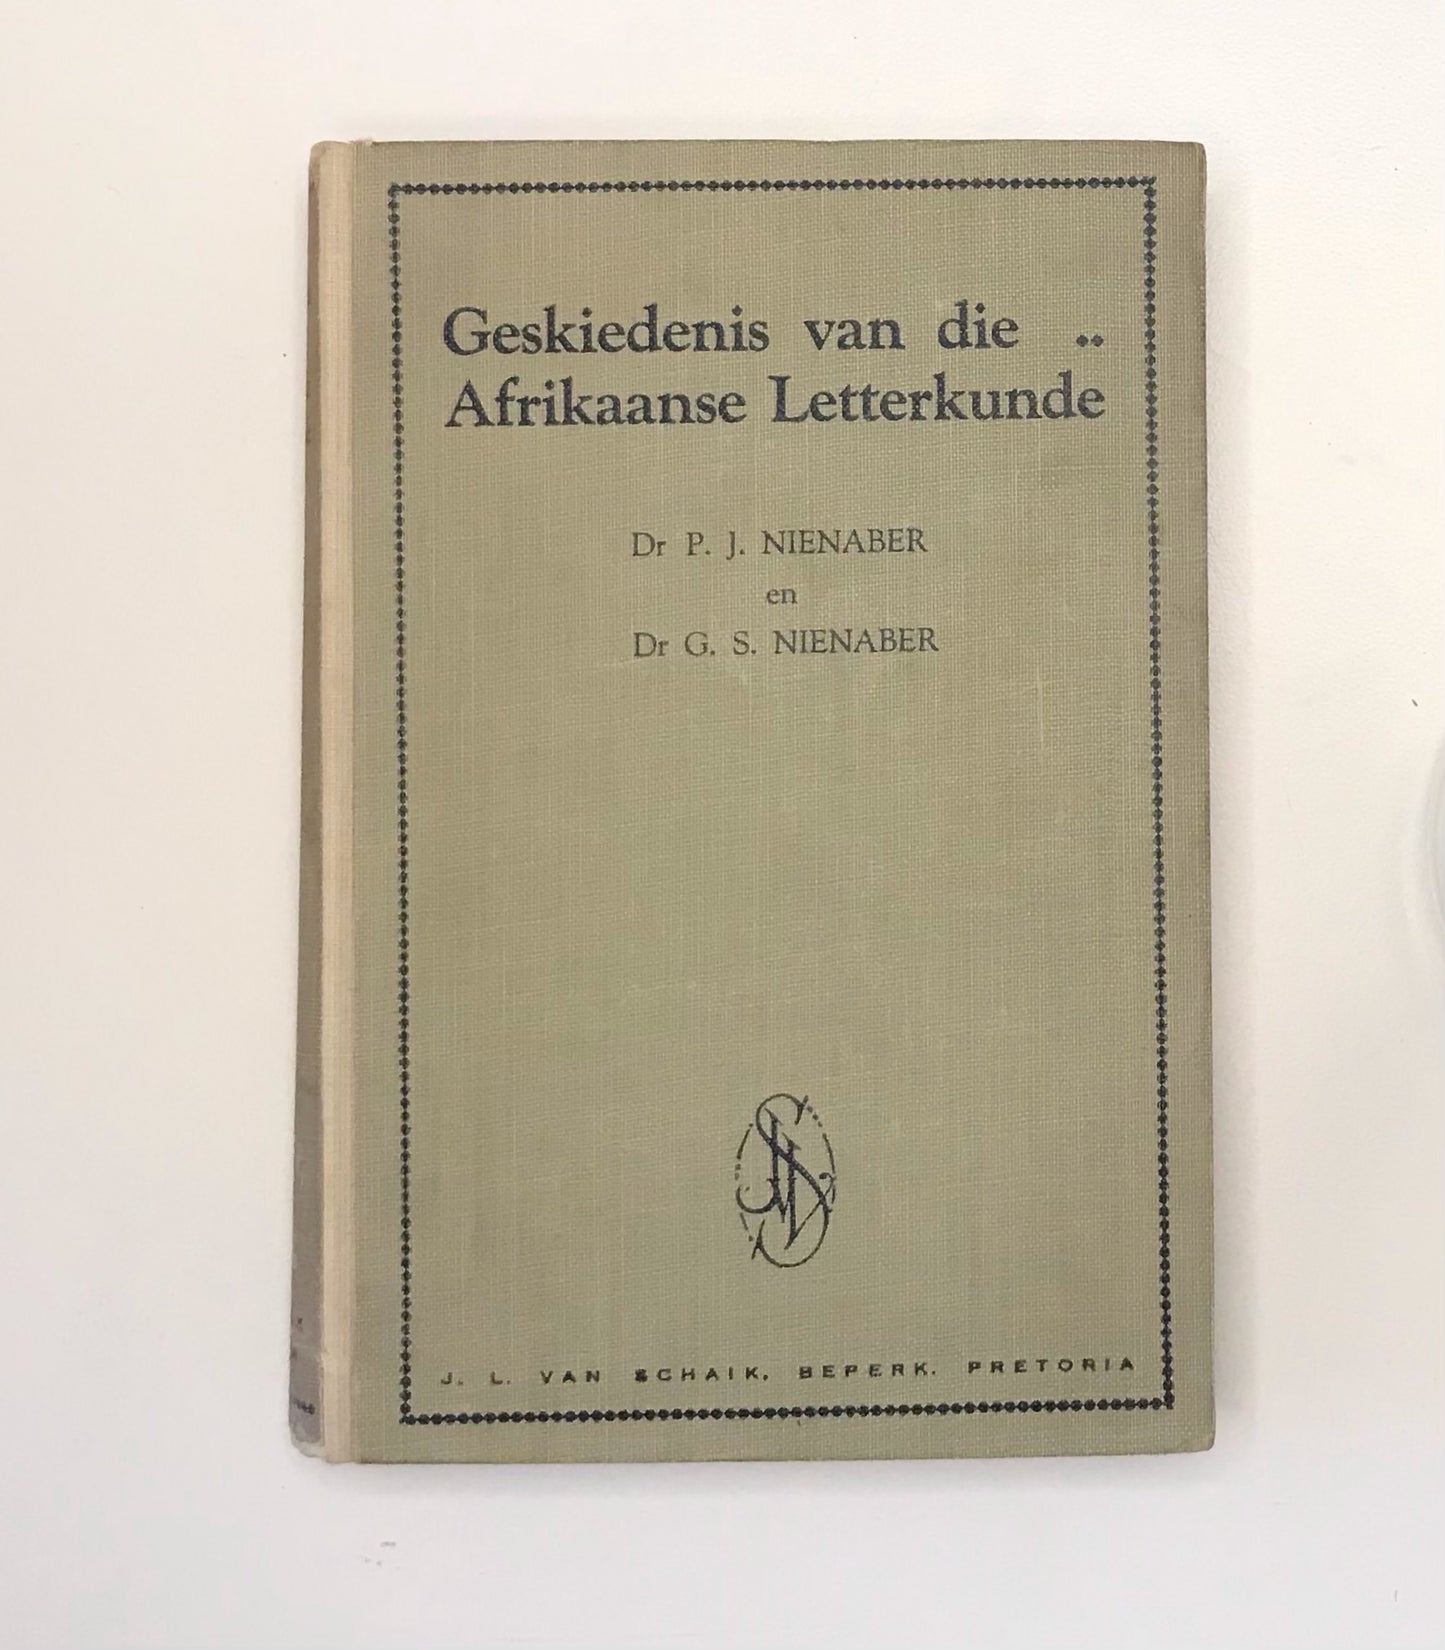 Geskiedenis van die Afrikaanse Letterkunde: vanaf die begin tot aan die einde van die 19de eeu - Dr. P.J. Nienaber & Dr. G.S. Nienaber